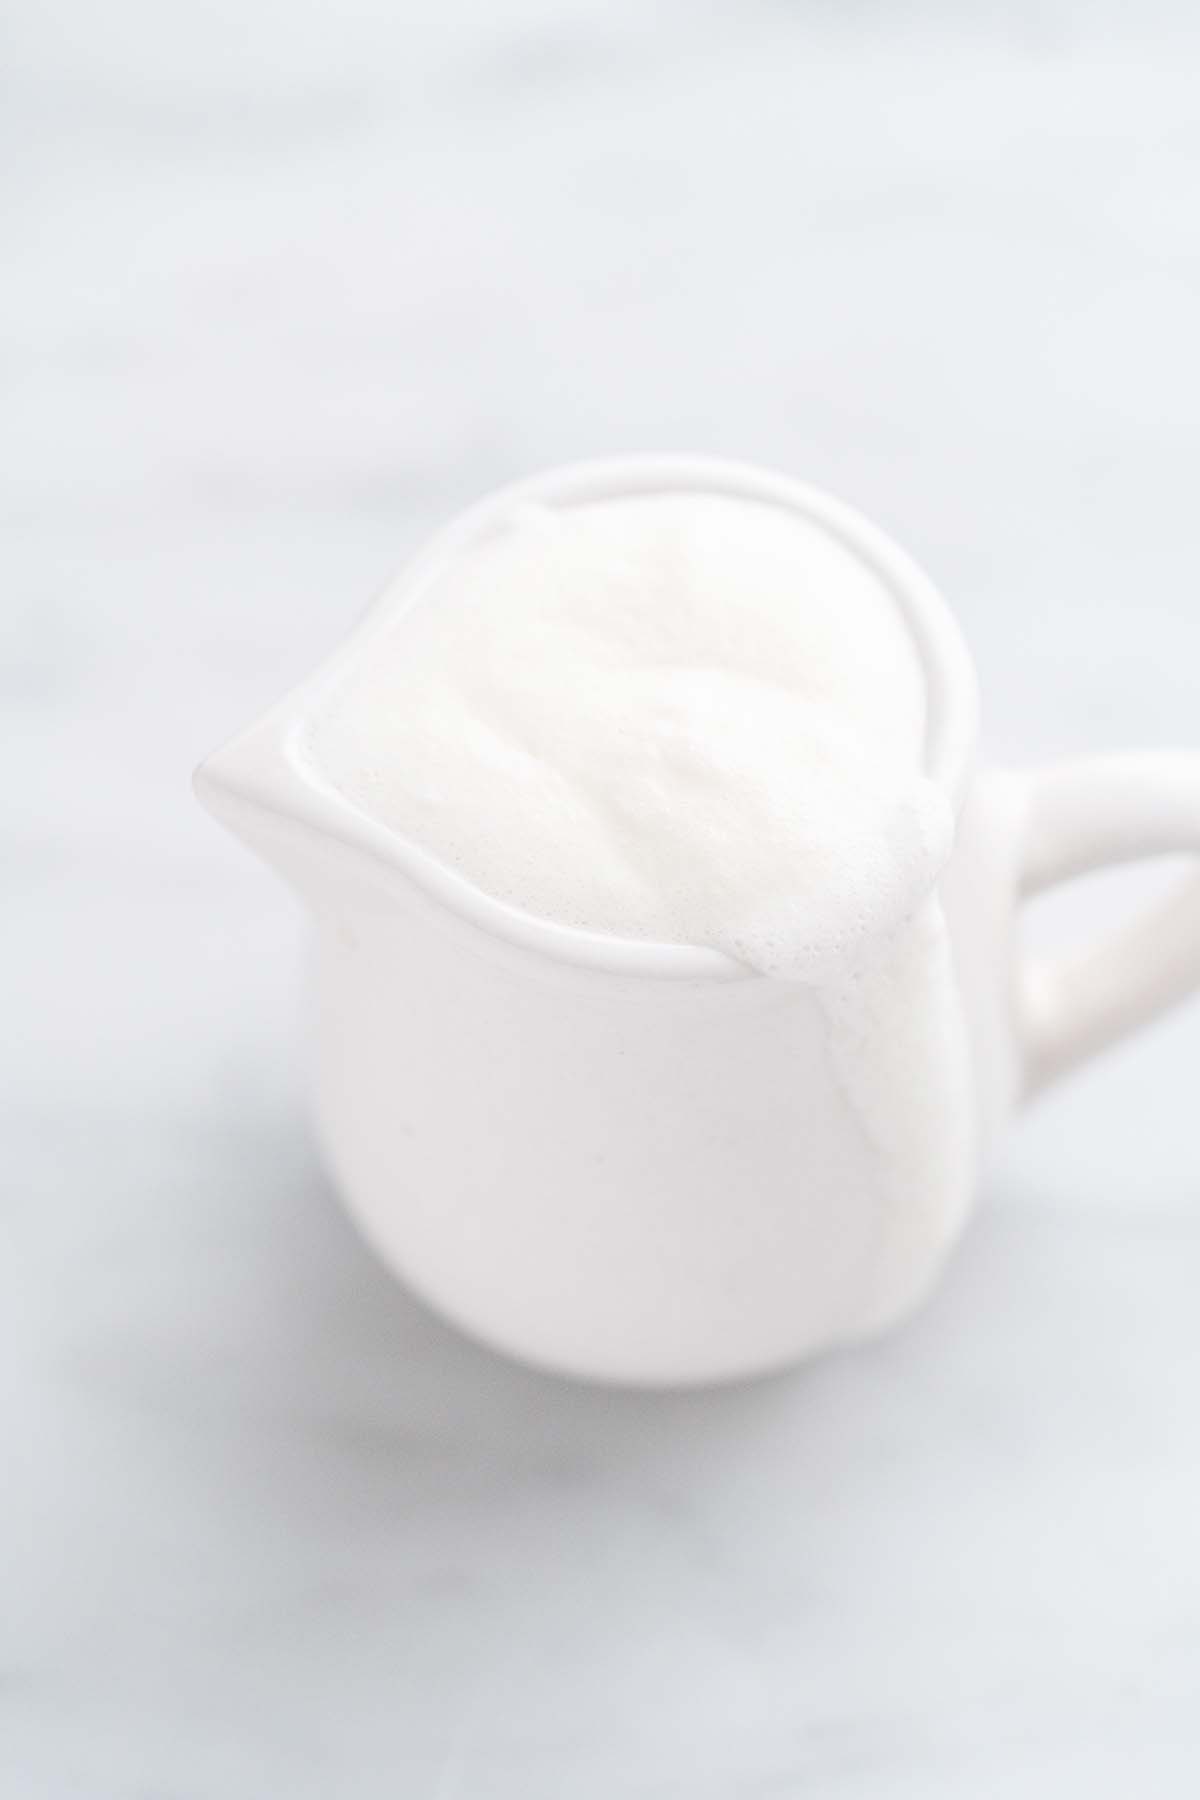 vanilla cream sweet cold foam in small white pitcher